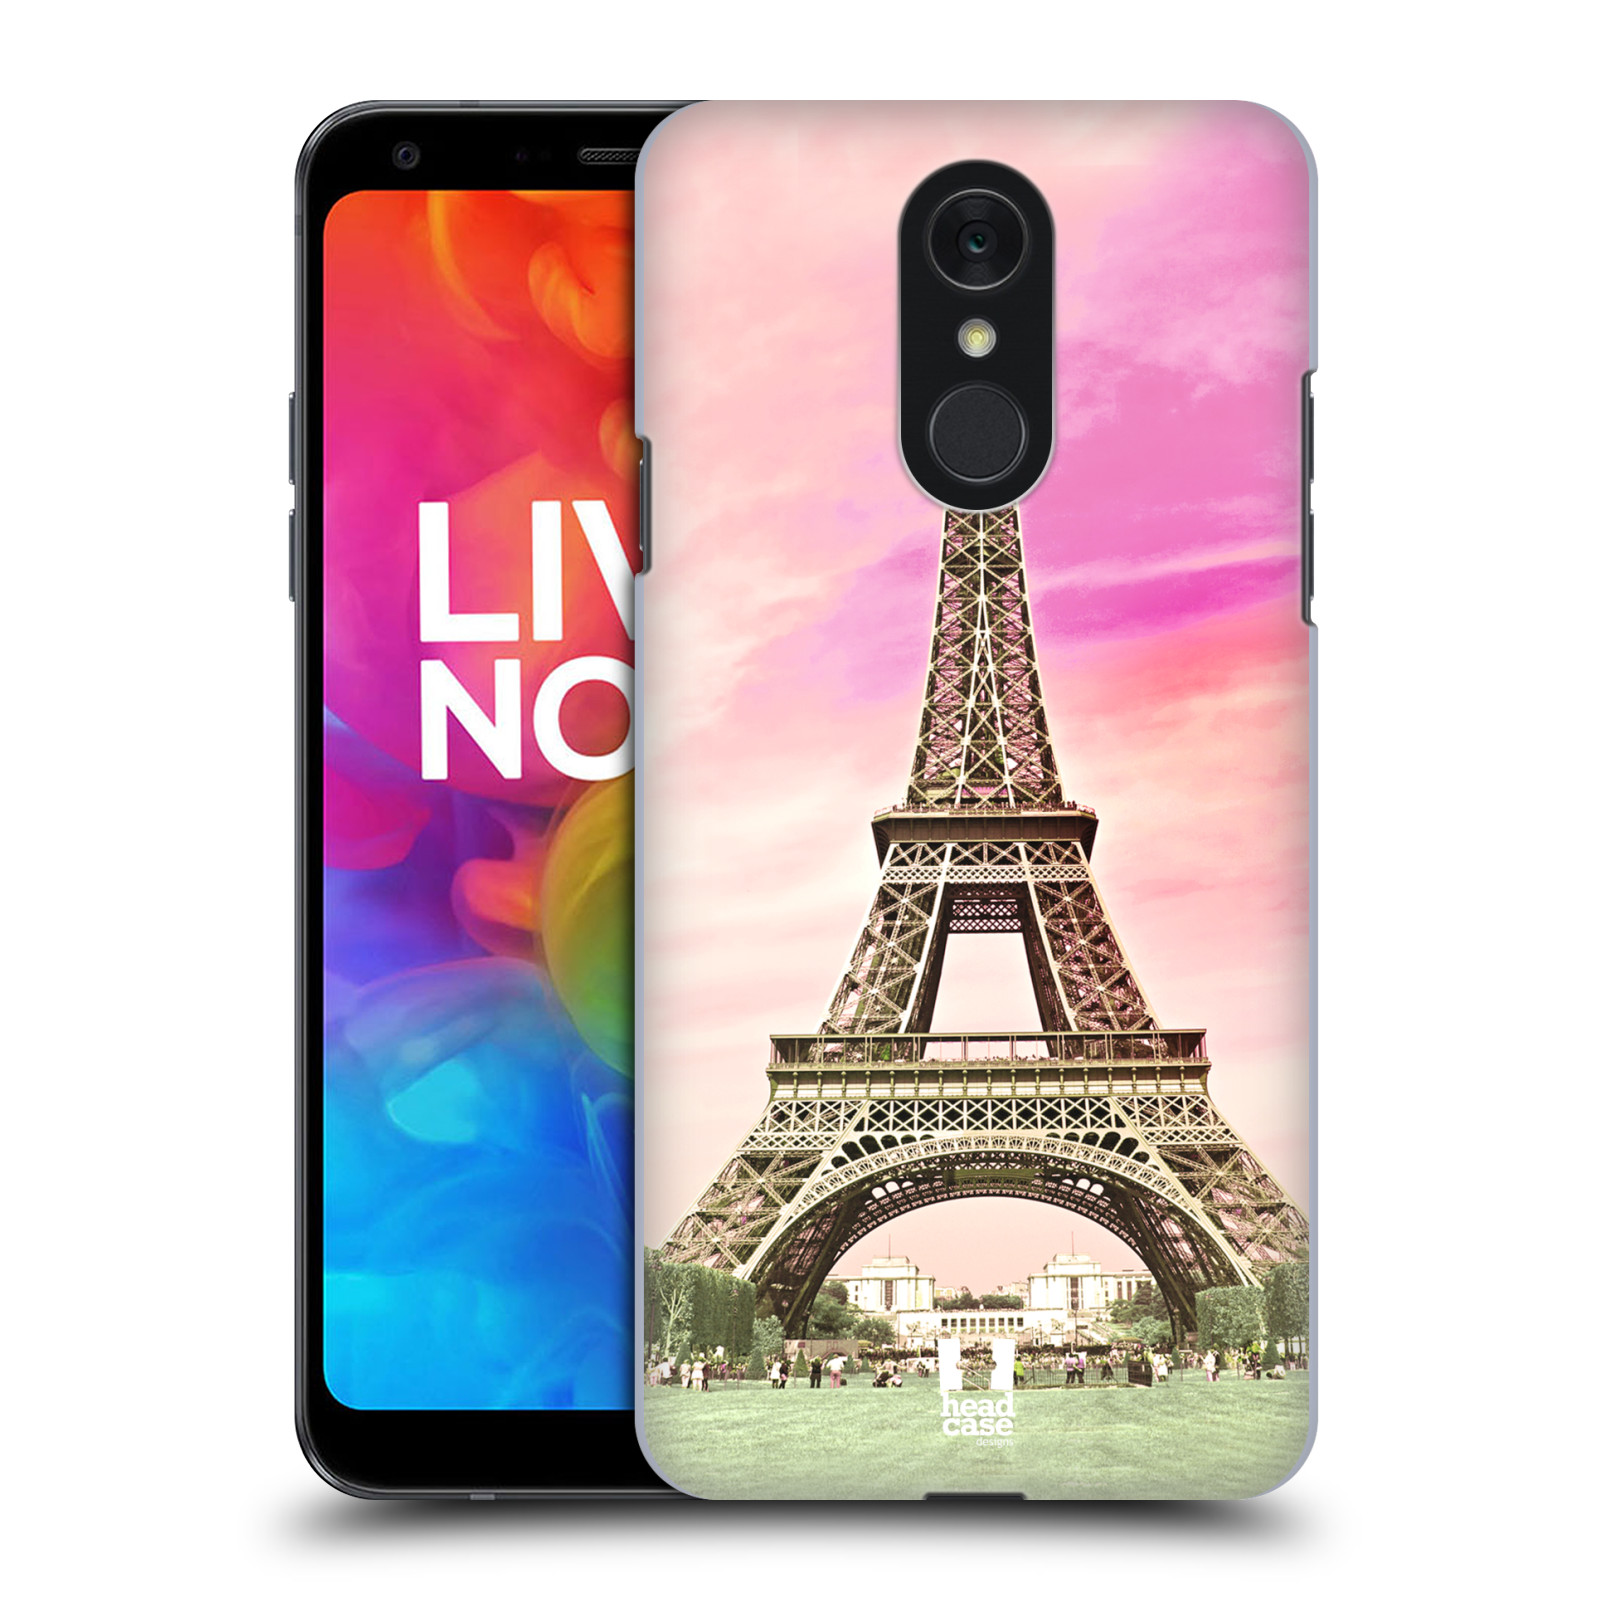 Pouzdro na mobil LG Q7 - HEAD CASE - historická místa Eiffelova věž Paříž